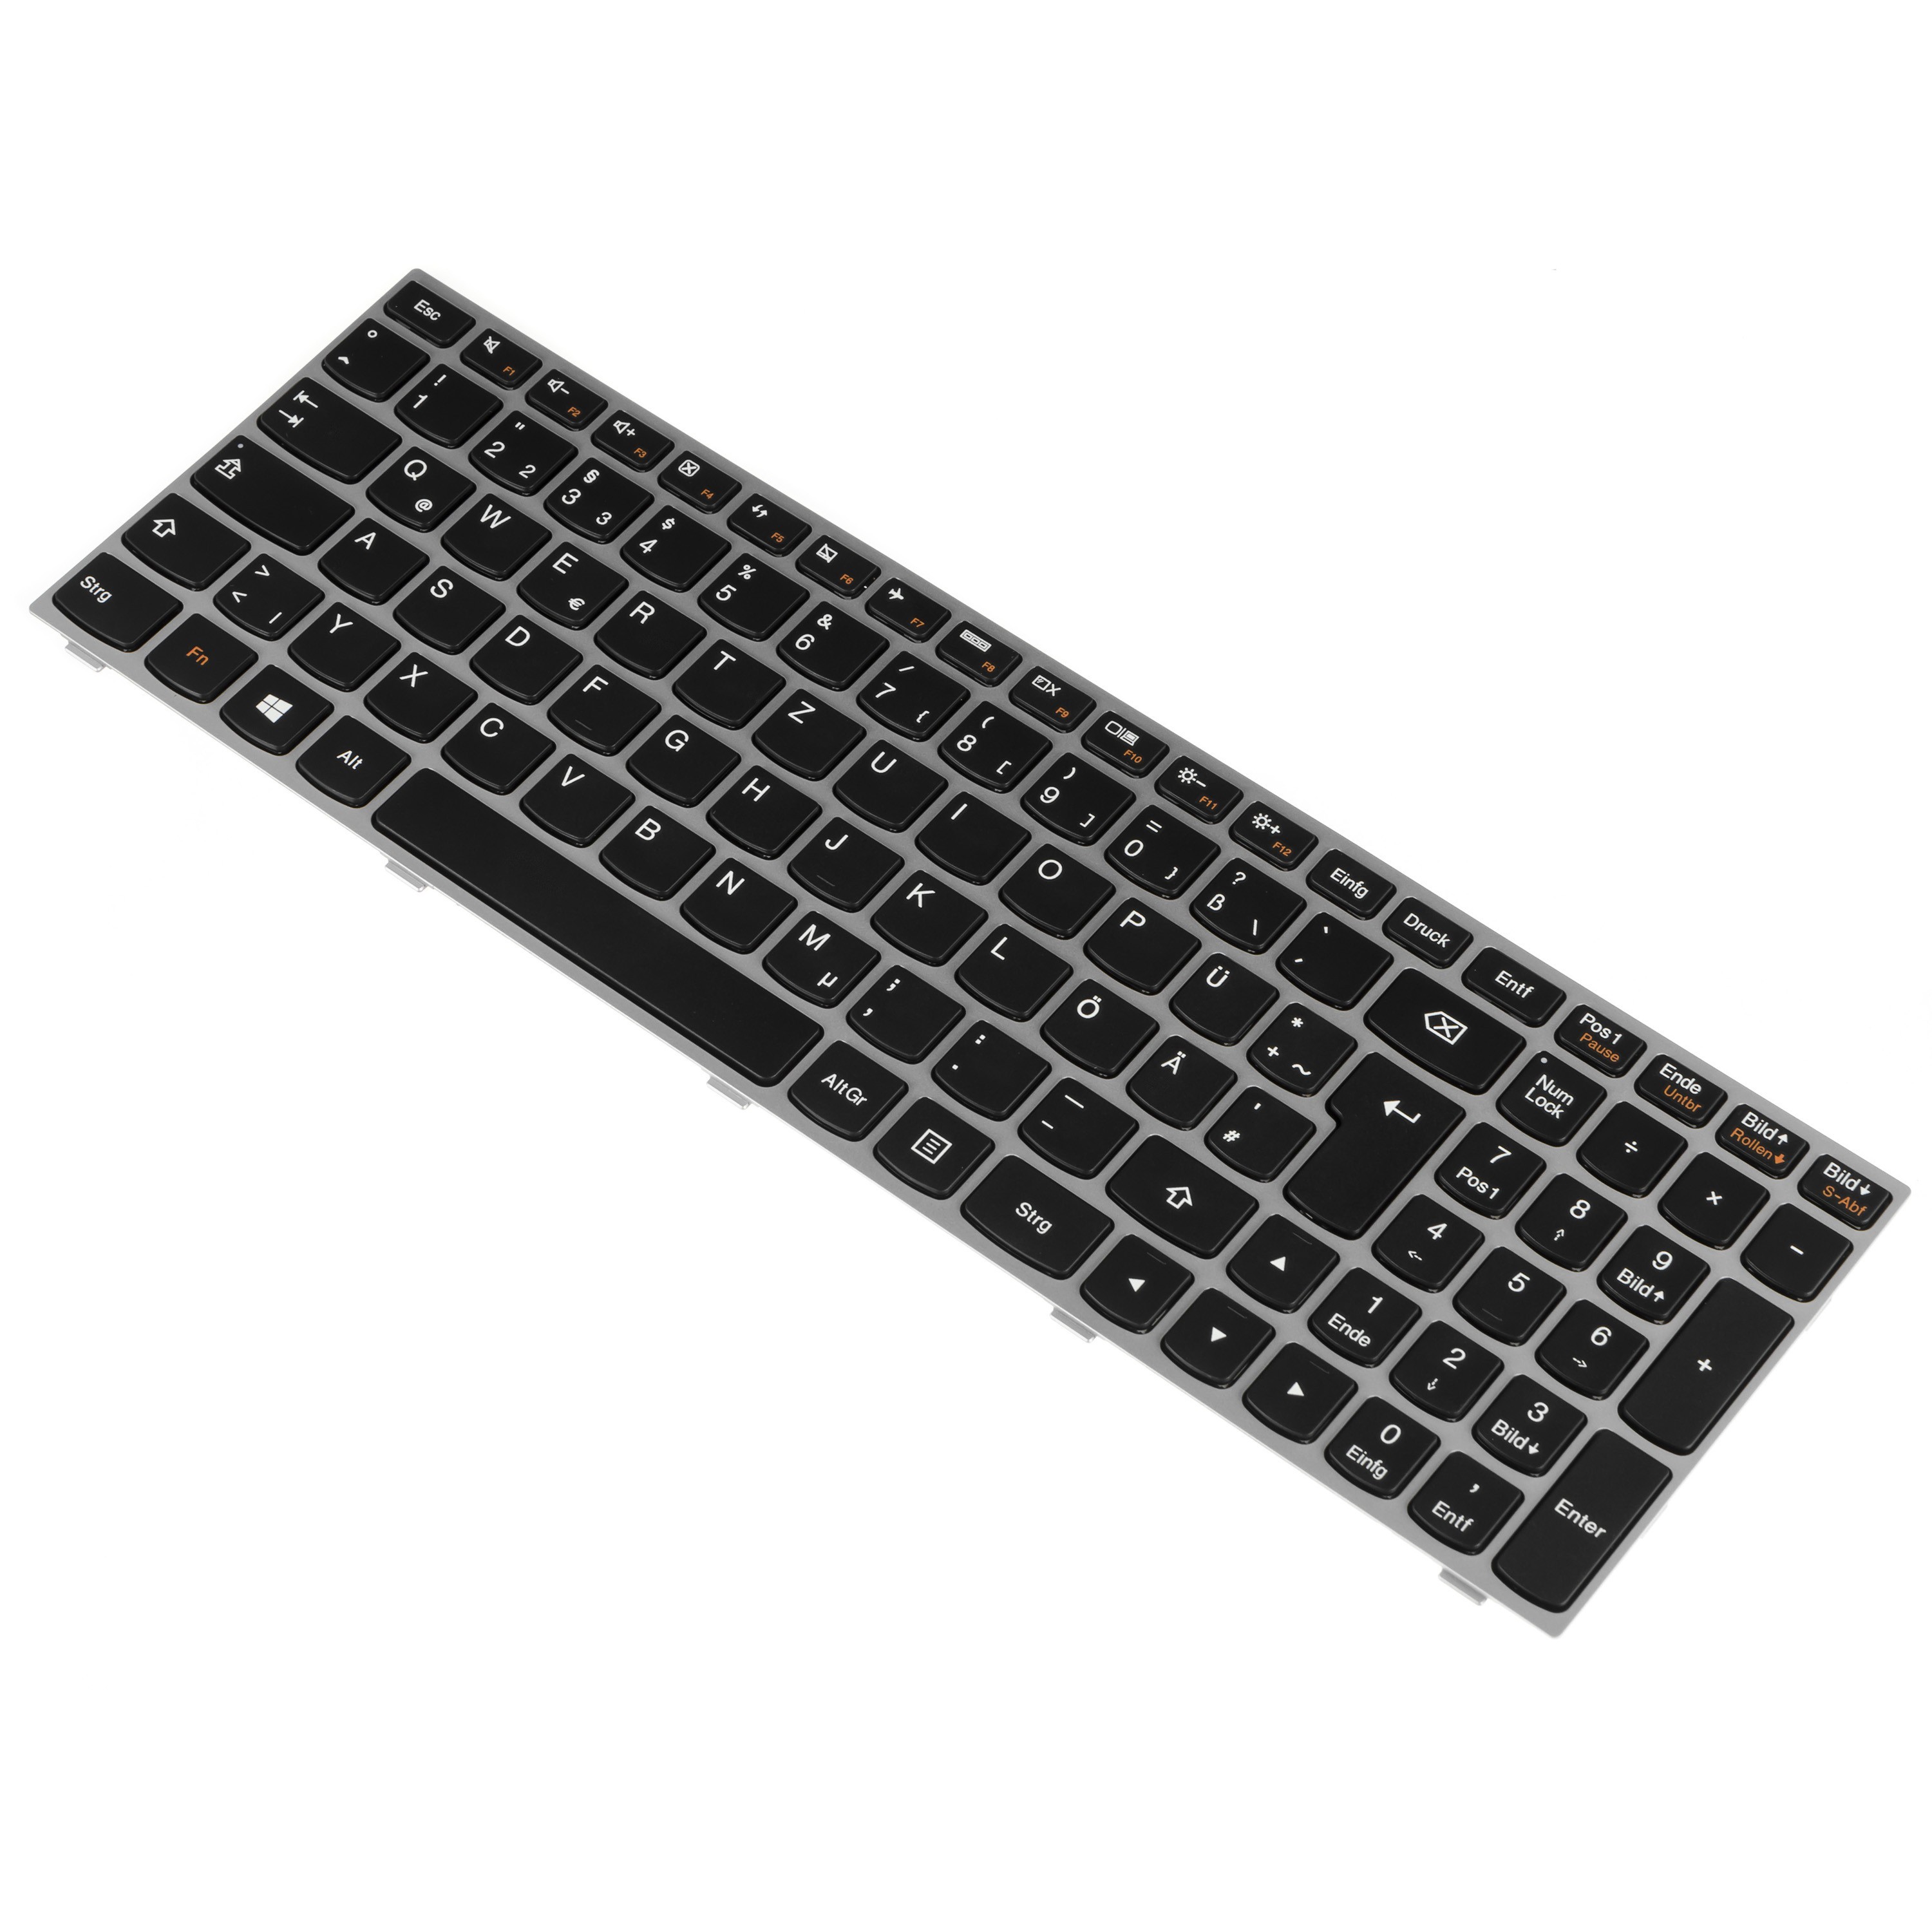 Green Cell Keyboard for Laptop Lenovo E51 G50 G50-30 G50-70 G50-45